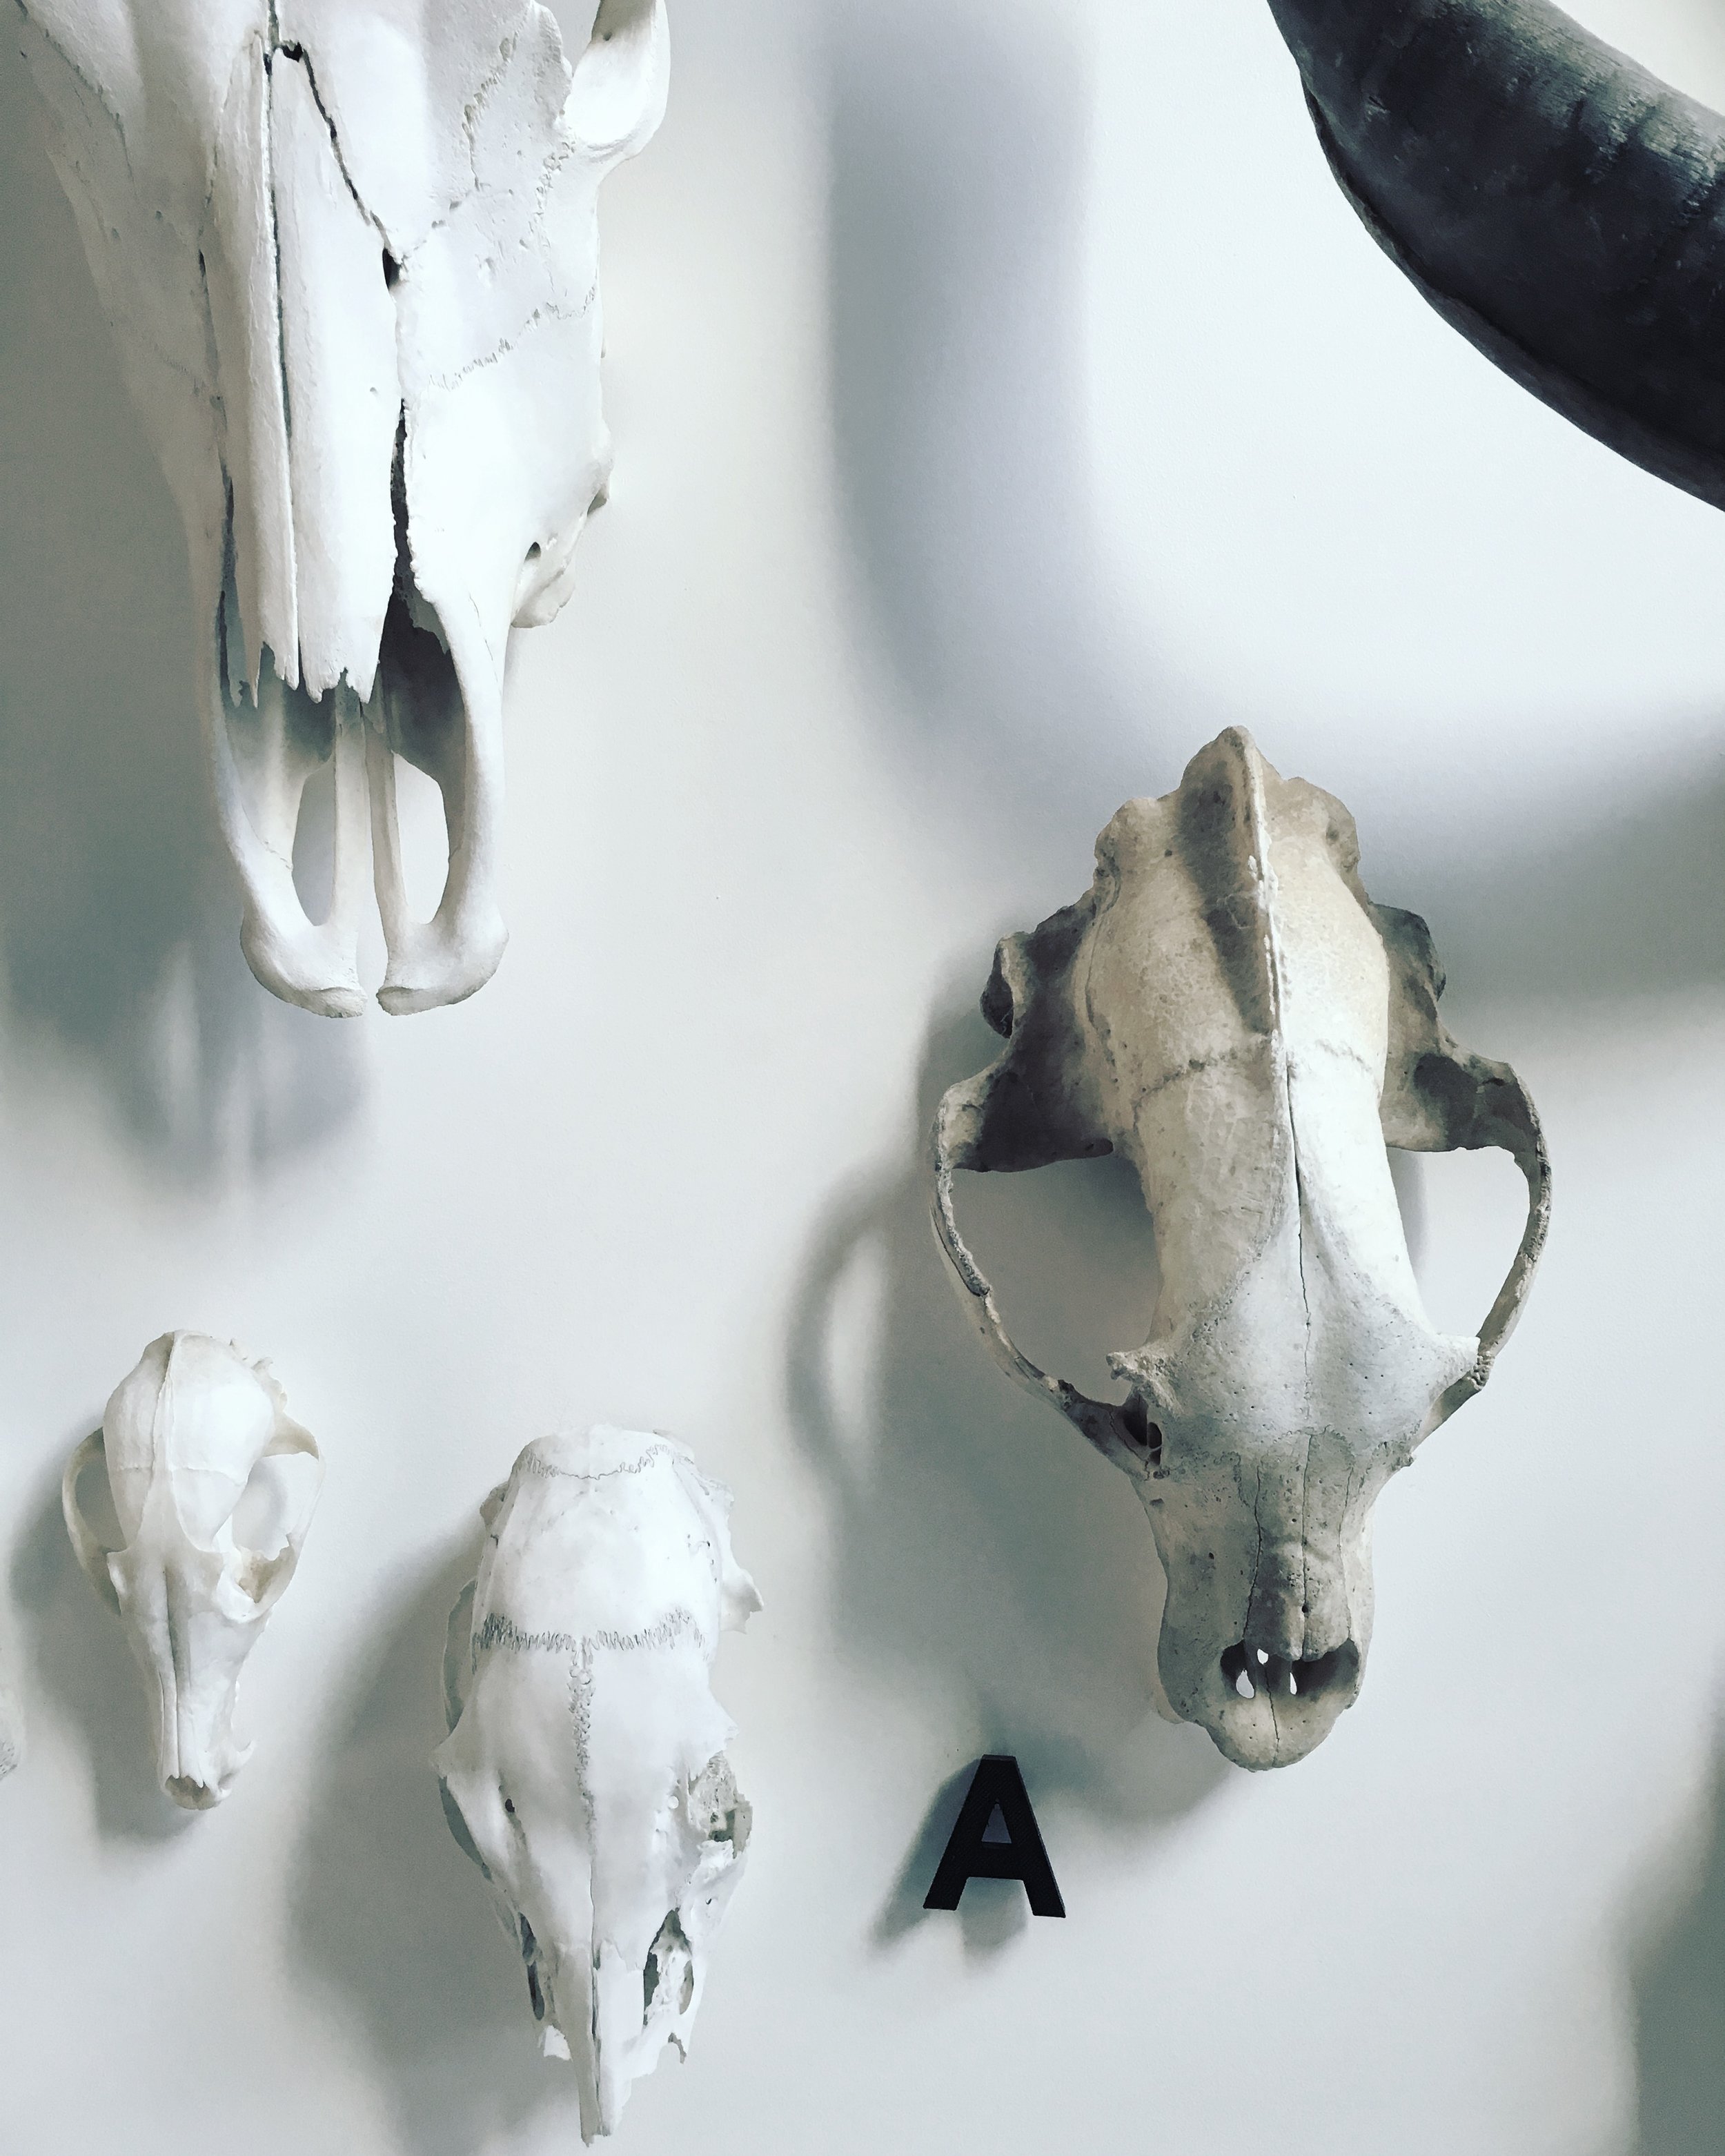  Collection de crânes  Maison, Mile end, Montréal    